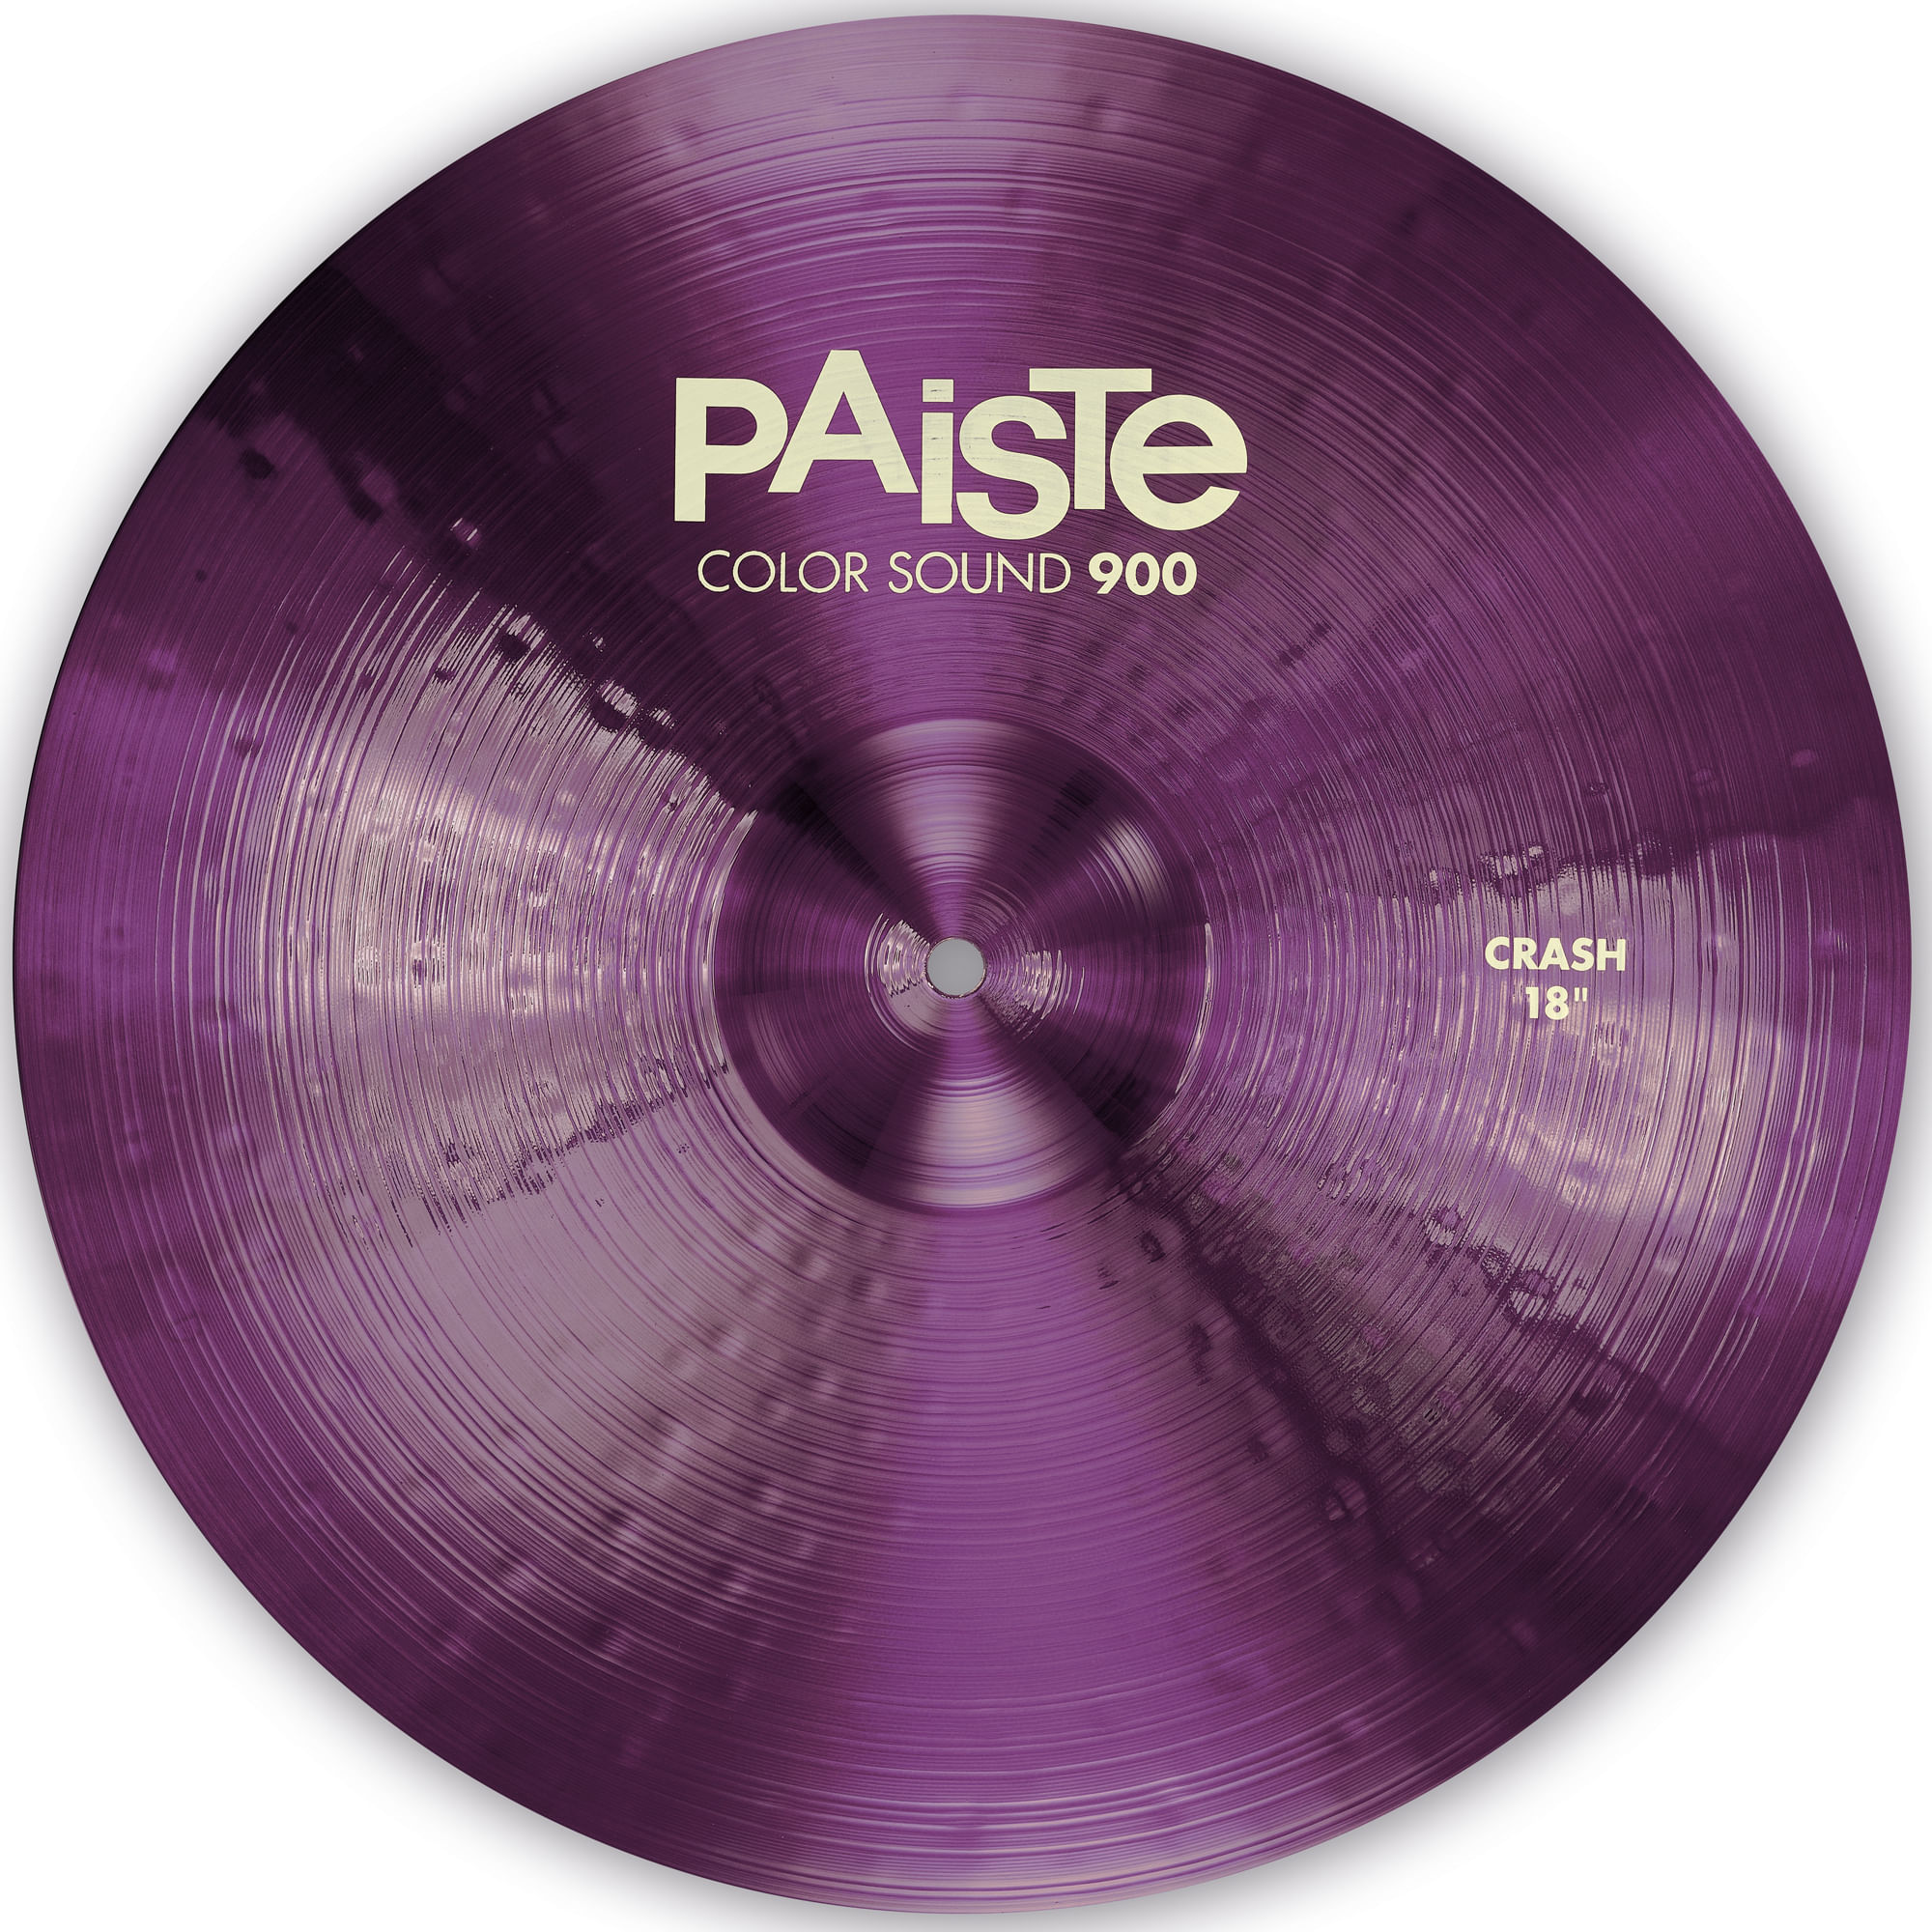 Paiste Color Sound 900 Crash Cymbal - 18